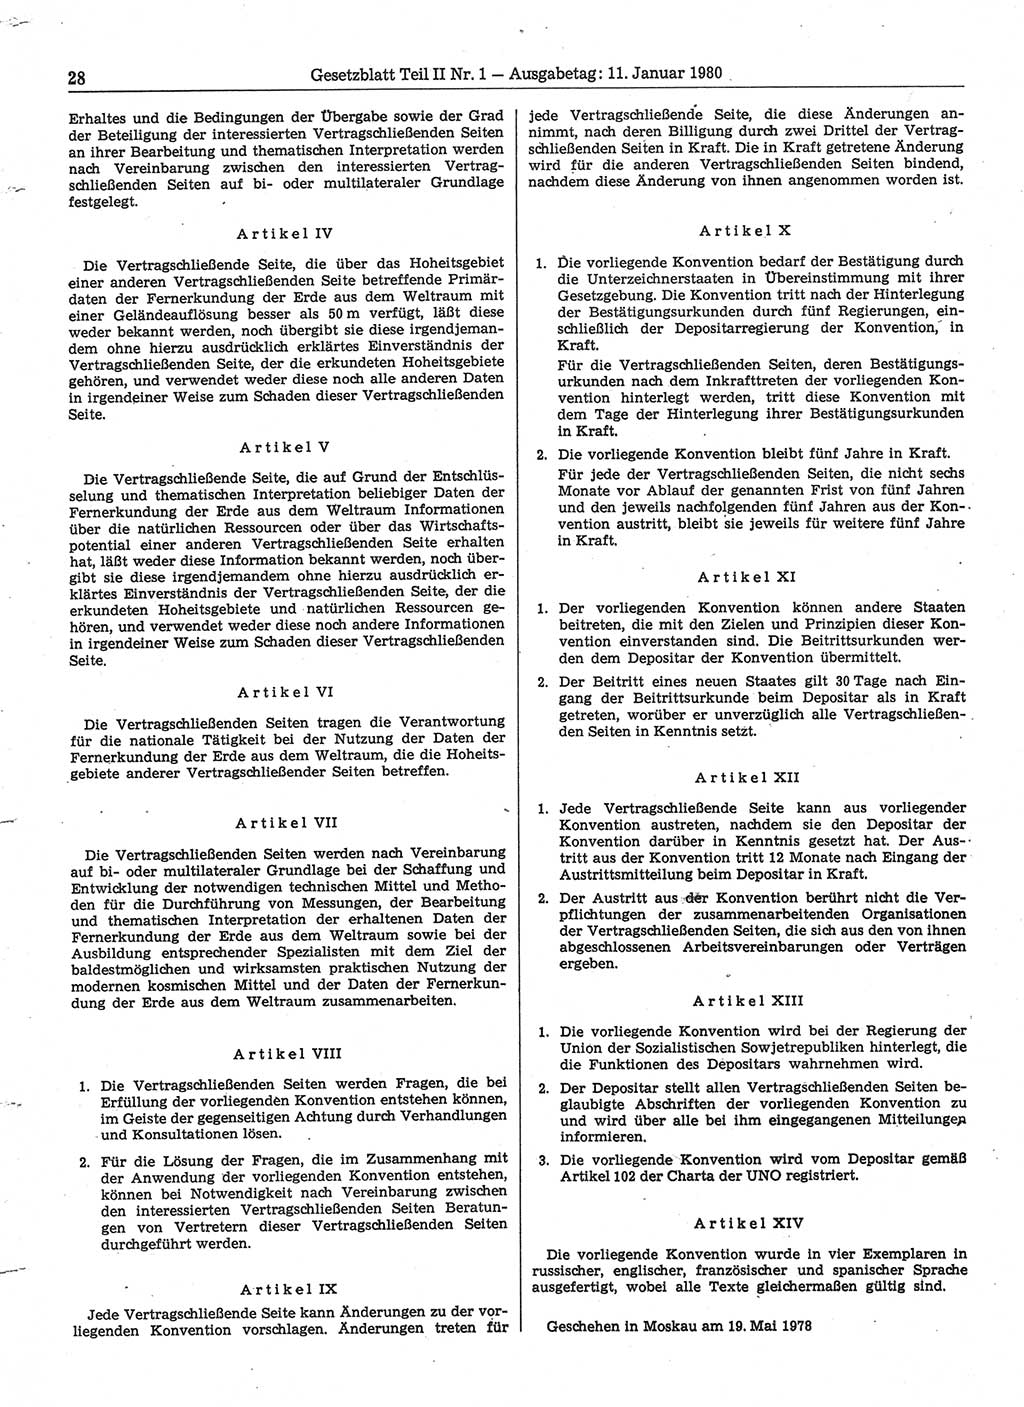 Gesetzblatt (GBl.) der Deutschen Demokratischen Republik (DDR) Teil ⅠⅠ 1980, Seite 28 (GBl. DDR ⅠⅠ 1980, S. 28)